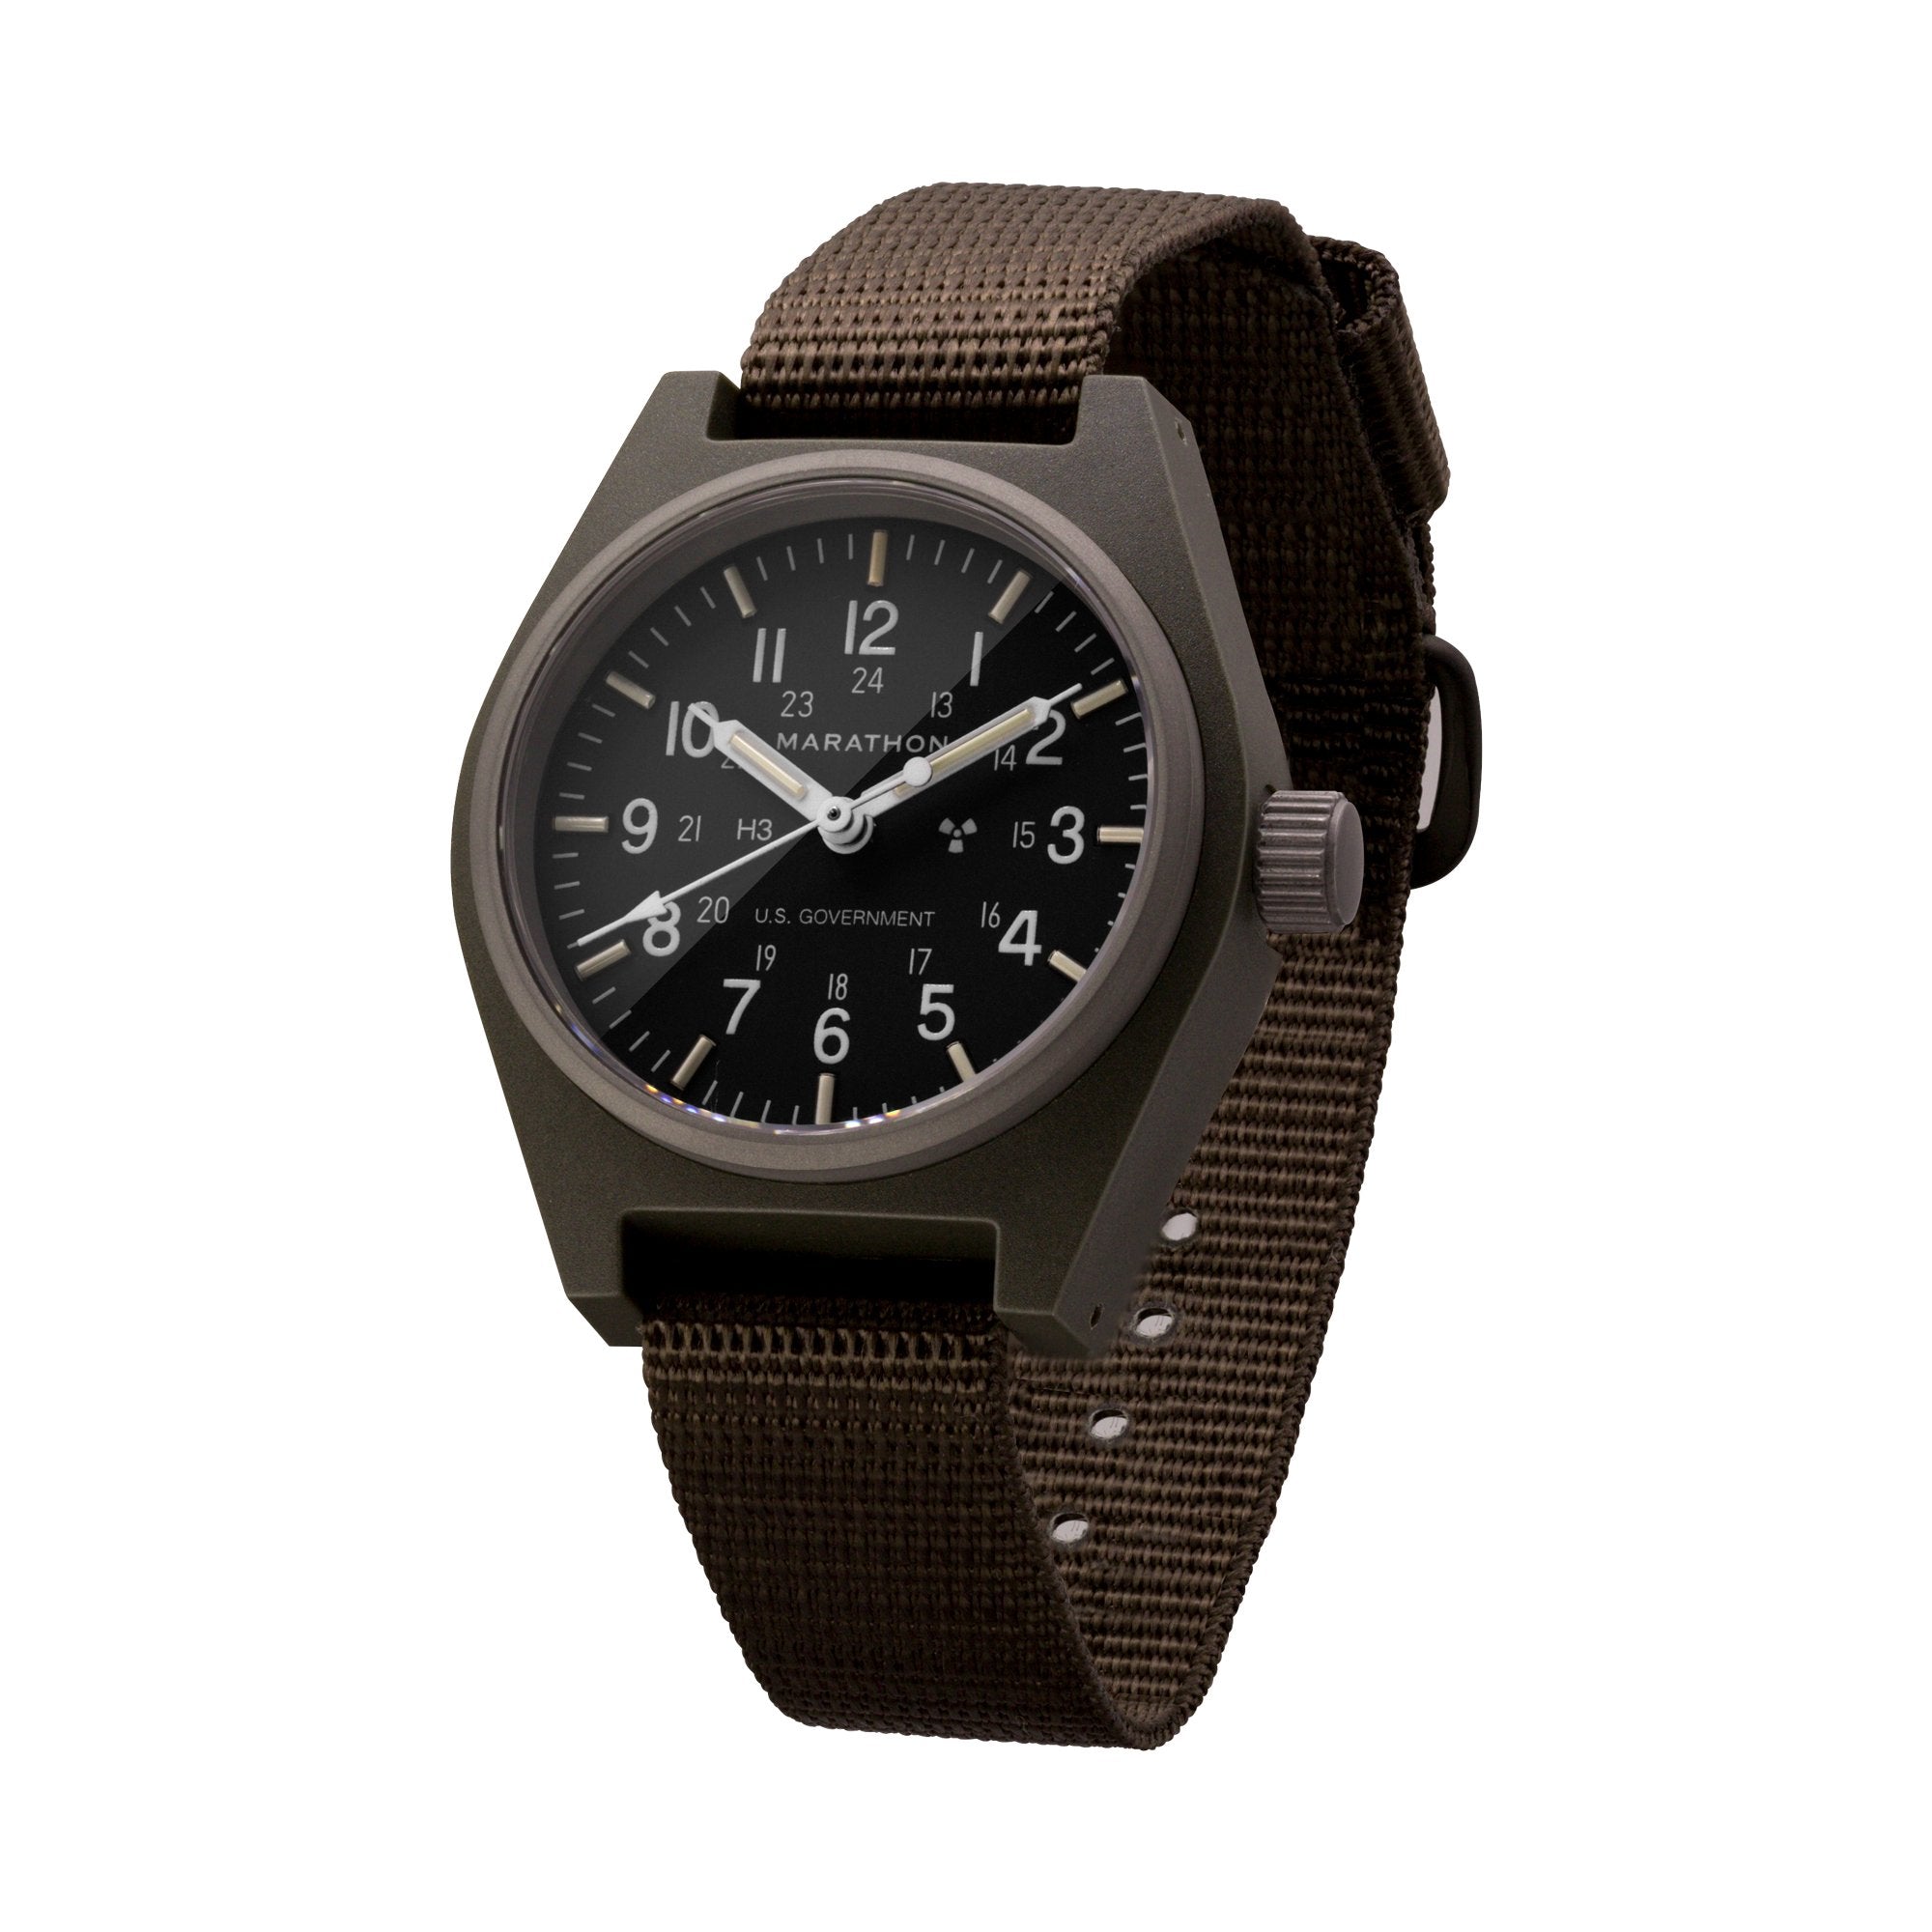 Zegarek mechaniczny ogólnego przeznaczenia (GPM) w kolorze szałwiowym, z oznaczeniami rządu USA – 34 mm – zegarek maratoński